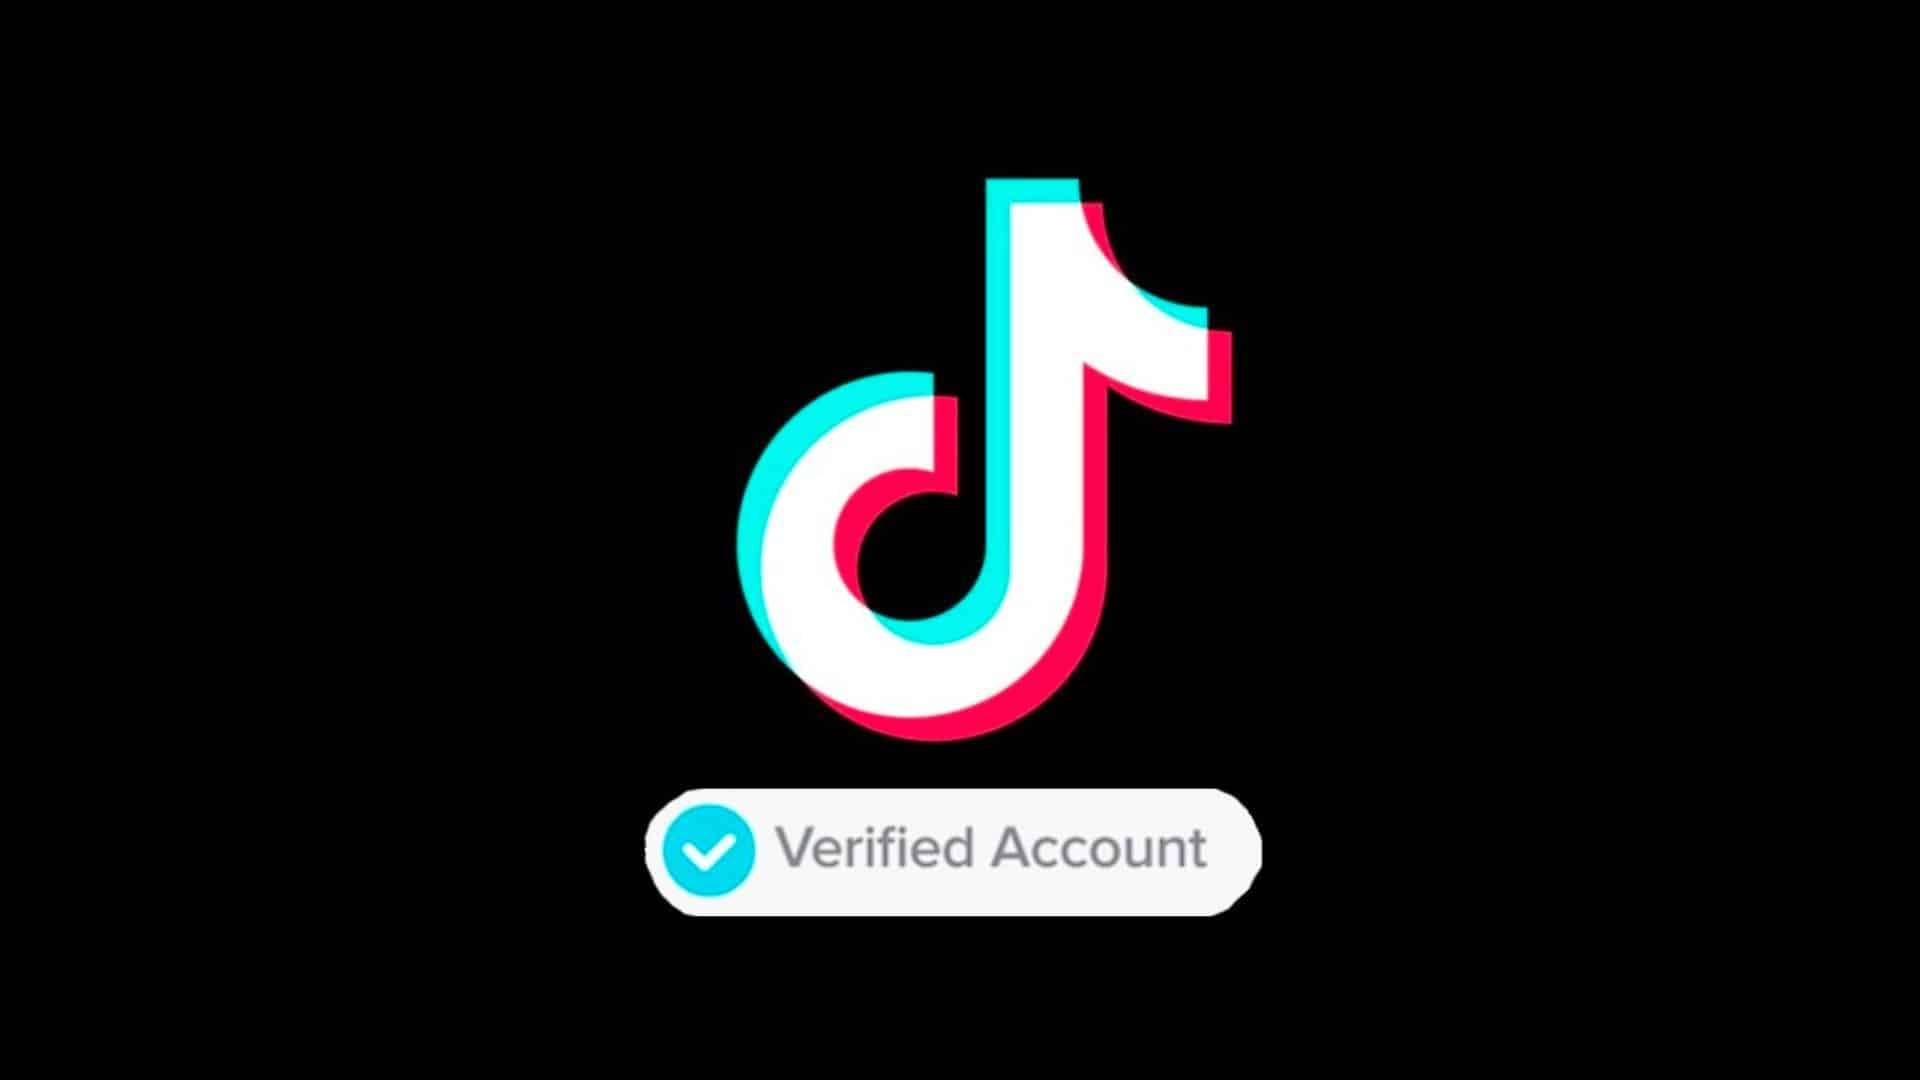 TikTok logo with verified account text